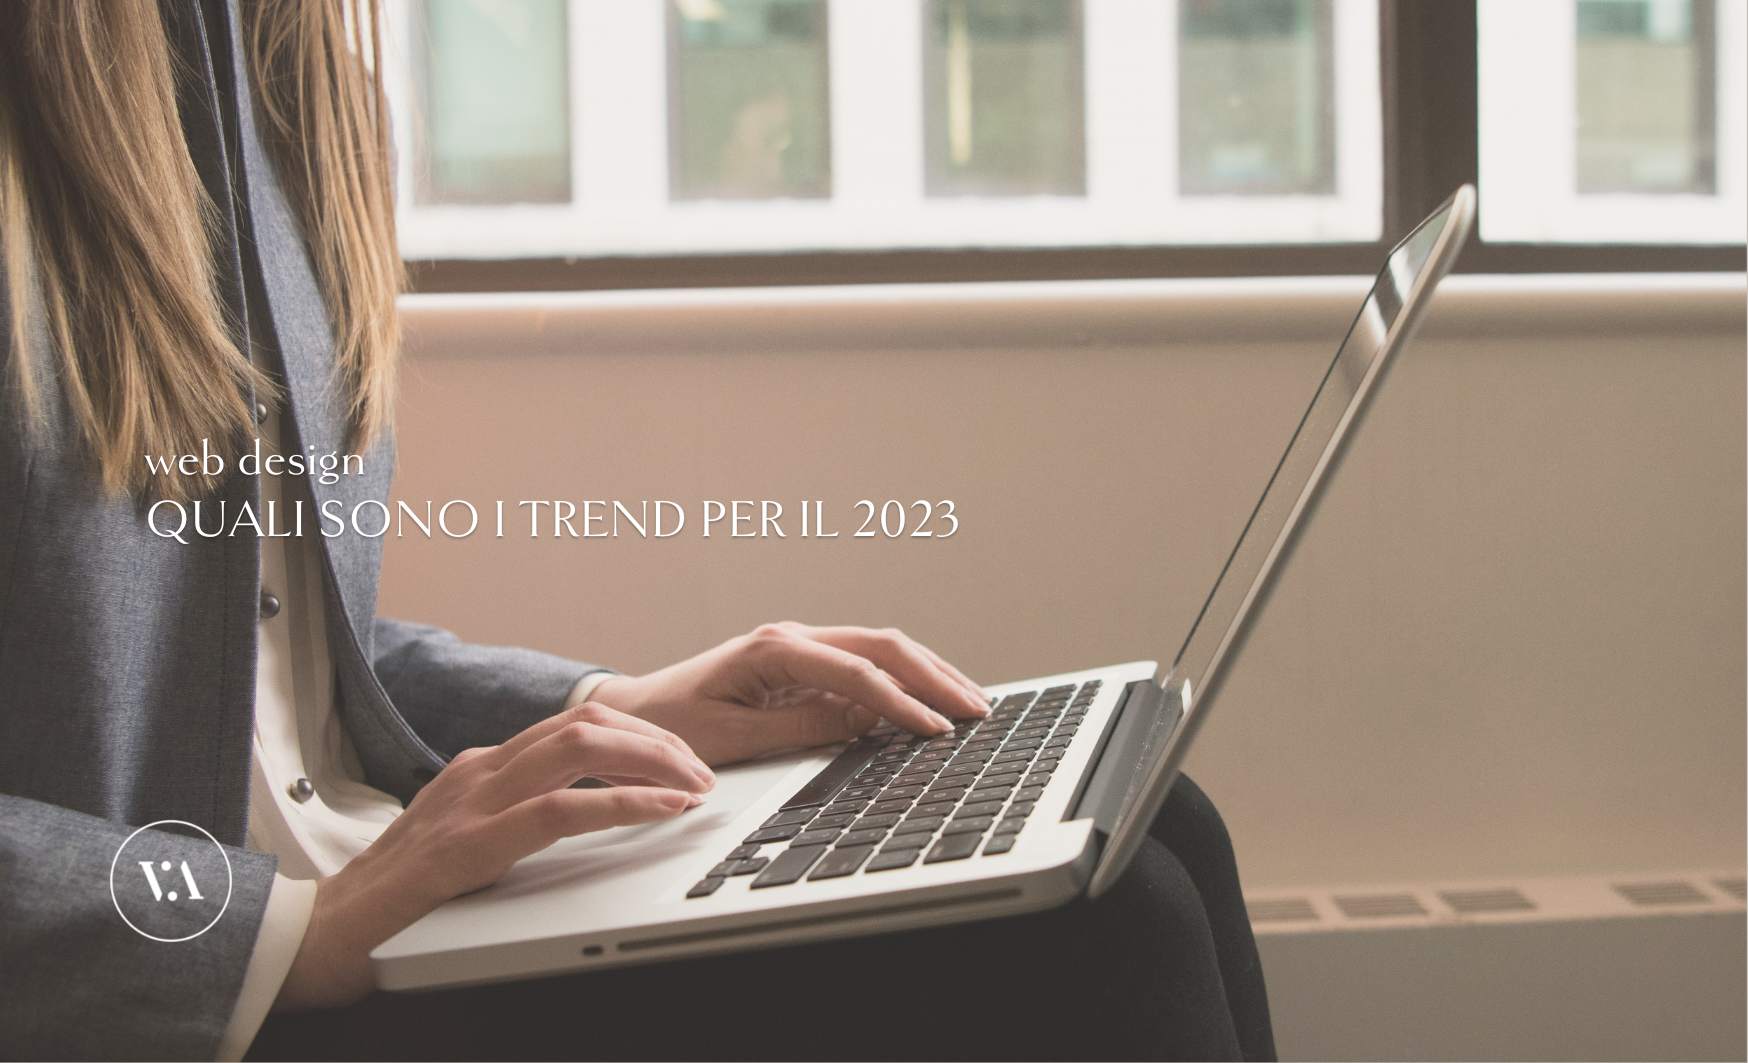 Web design: quali sono i trend per il 2023